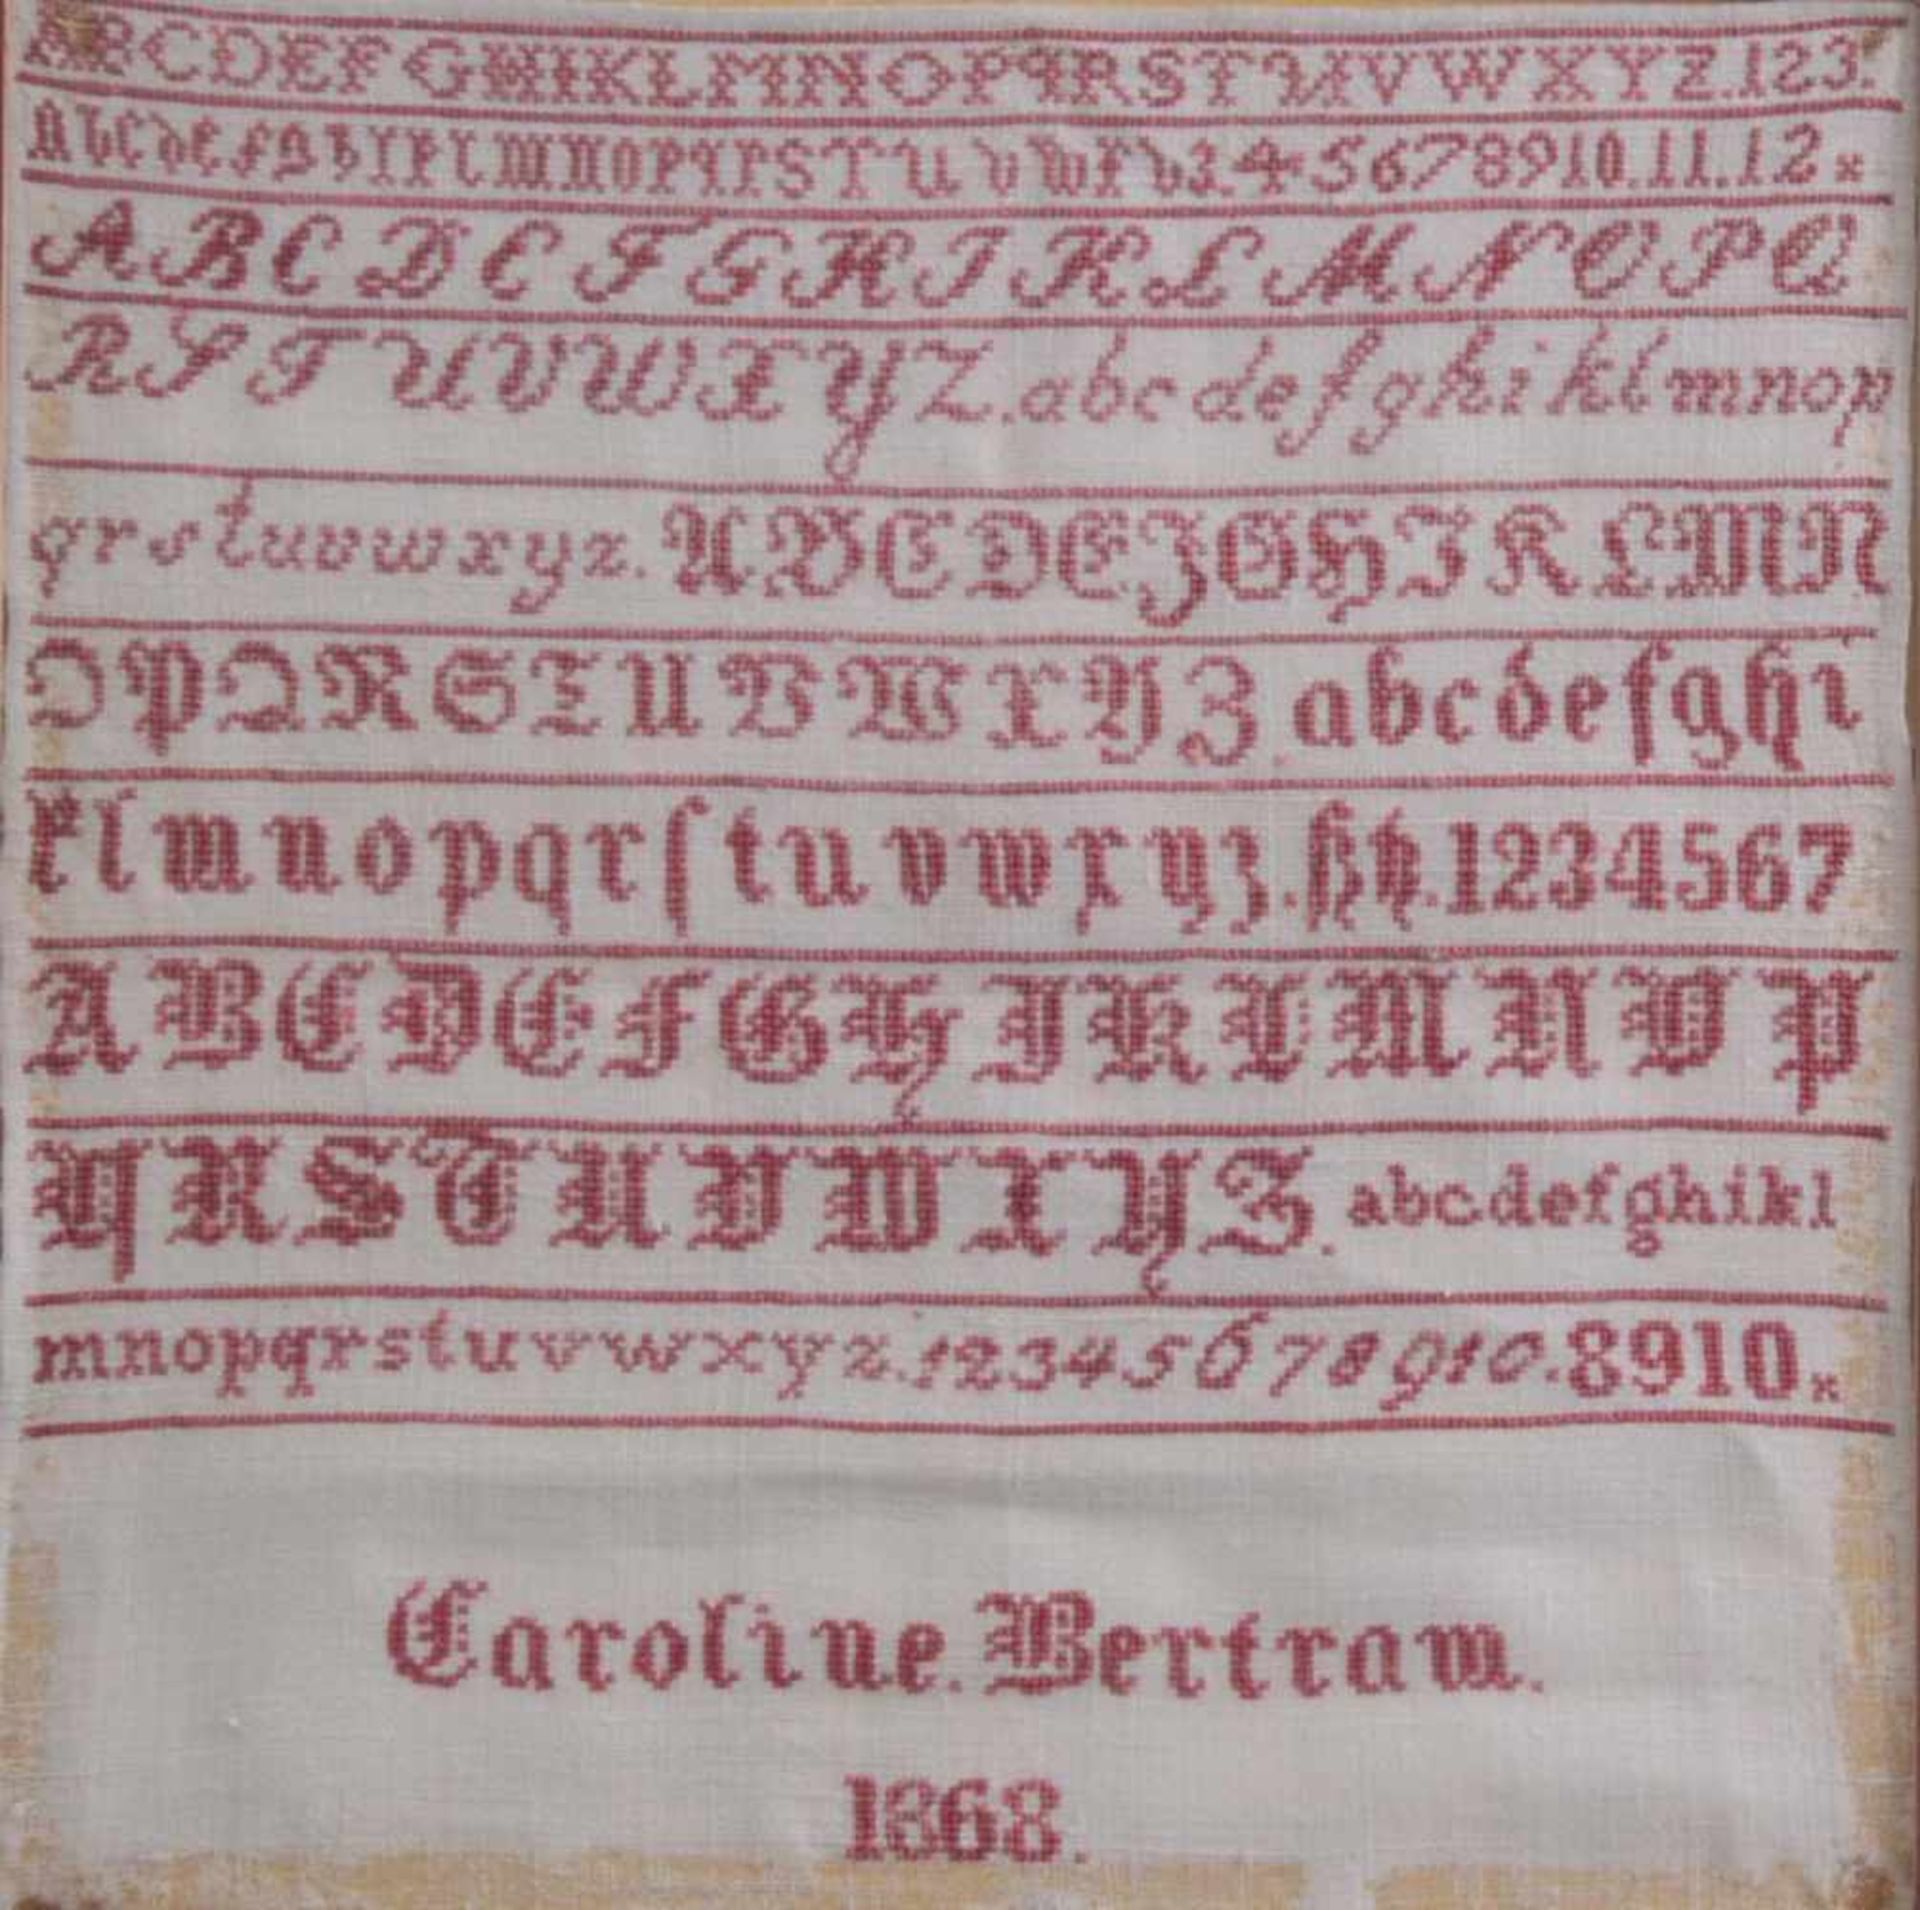 Stickbild von 1868Leinen mit rotem Faden, Alphabet und Zahlen, bezeichnet Caroline Bertram, - Bild 2 aus 3